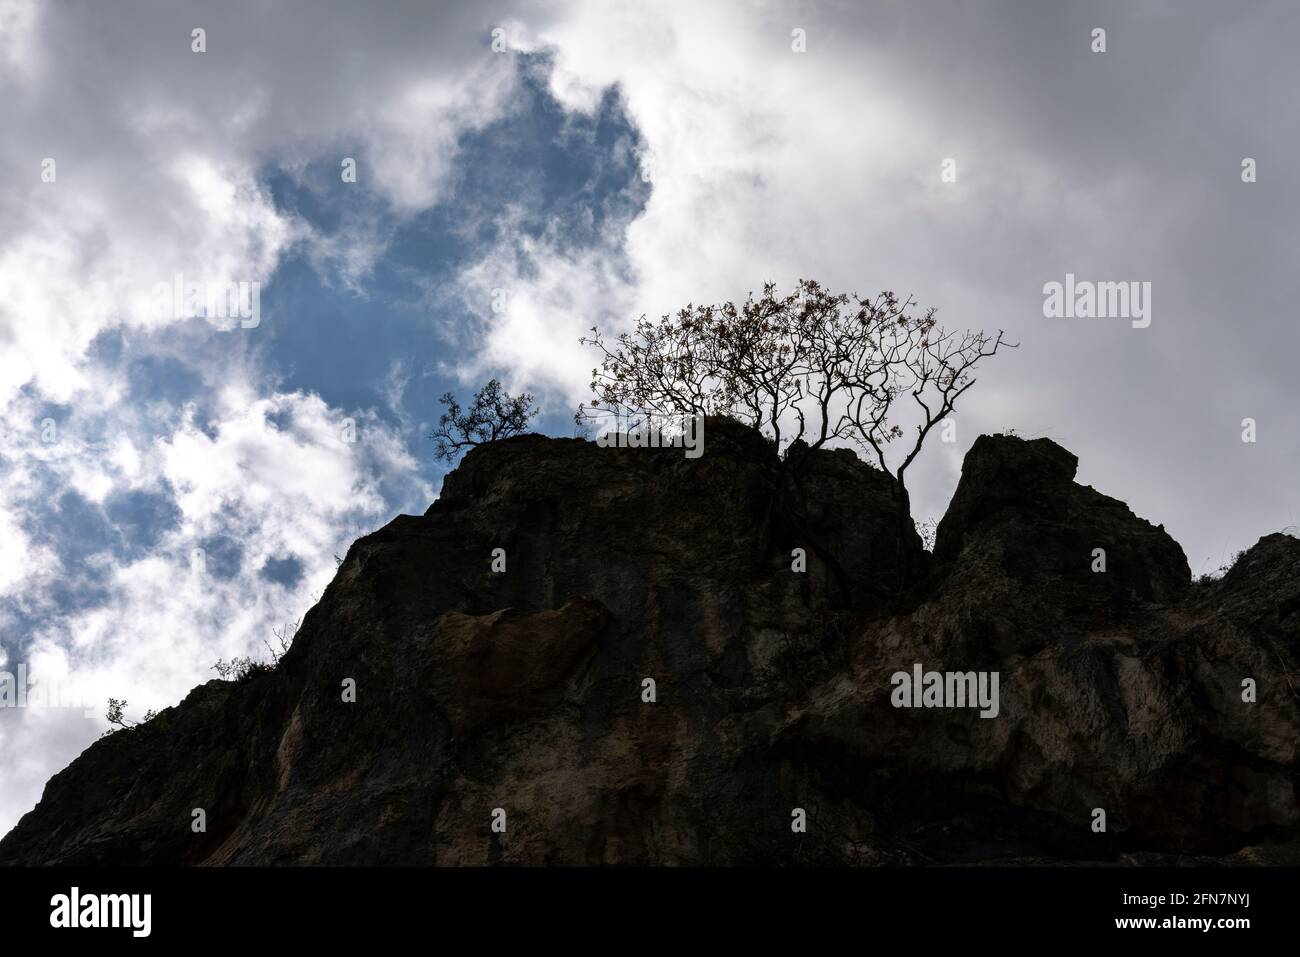 Paredes rocosas empinadas con árboles retroiluminados sobre un cielo nublado. Cloudscape. Abruzzo, Italia, Europa Foto de stock